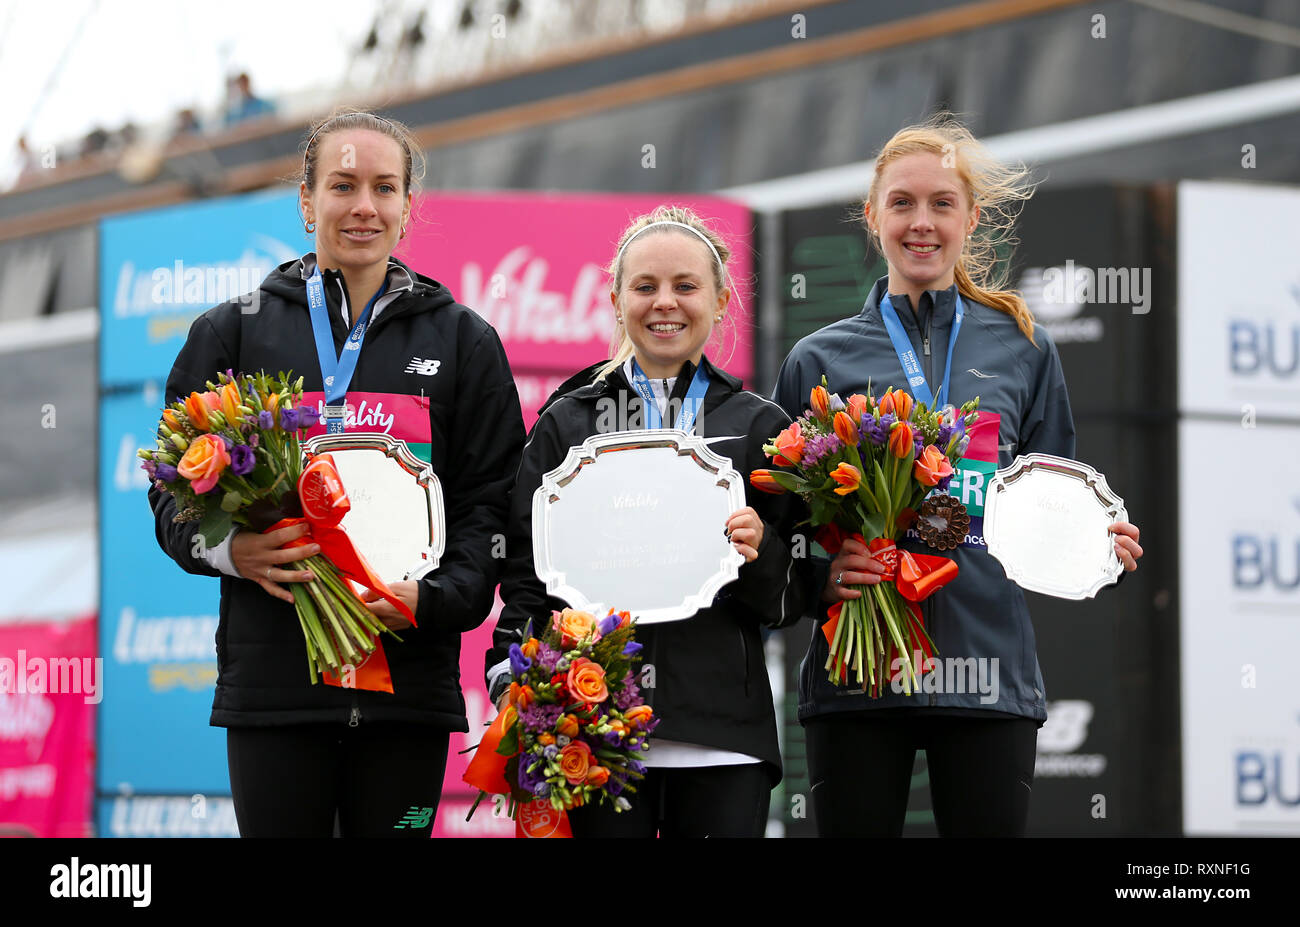 Charlotte Purdue, vainqueur de la course des femmes (centre), avec Charlotte Arter en troisième (à droite) et Beth Twell en deuxième au cours de l'épanouissement demi à Londres. Banque D'Images